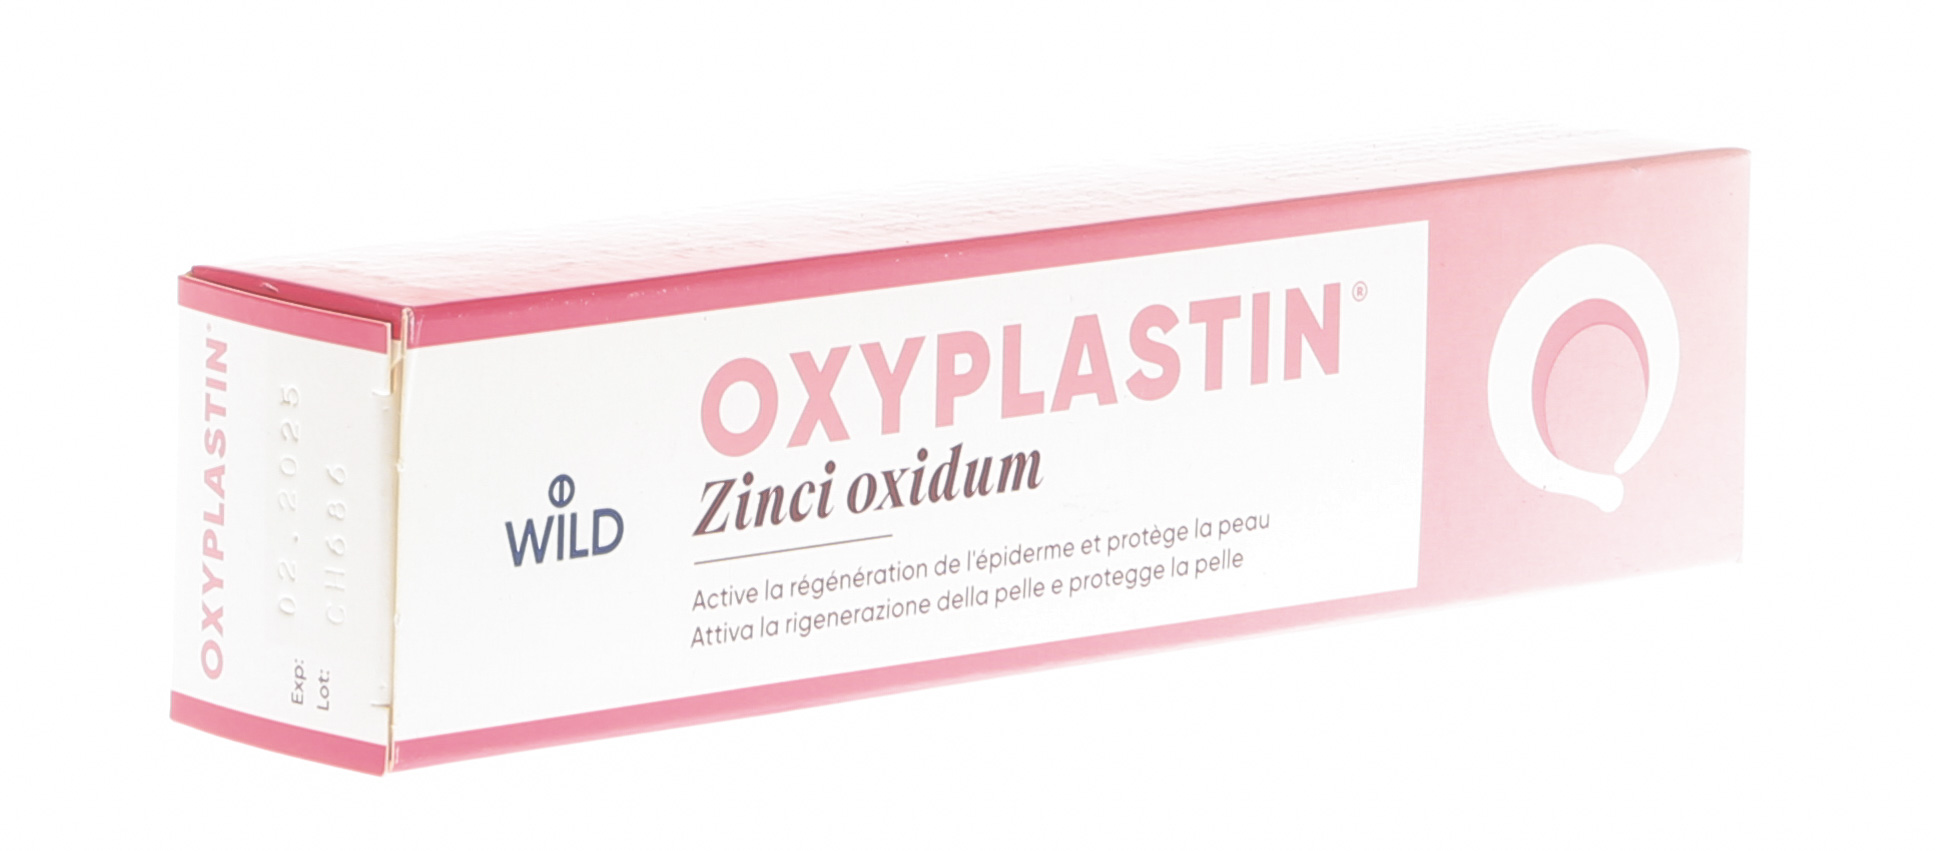 Oxyplastine pâte cicatrisante, protège la peau